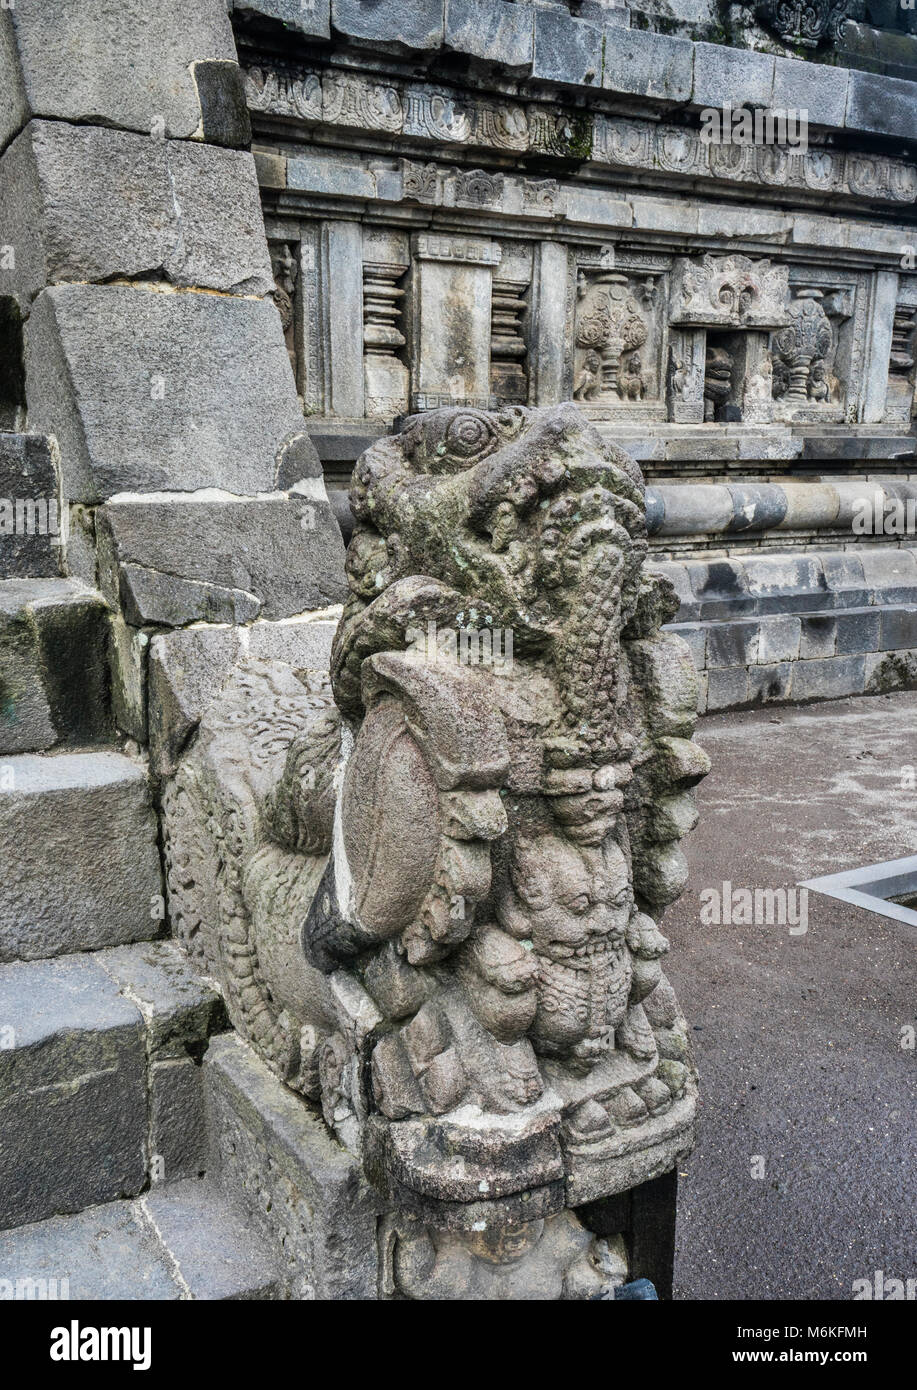 Indonesia, Java Central, la figura del tutor en la subida al templo de Vishnu en mediados del siglo XI. complejo del templo hindú de Prambanan Foto de stock